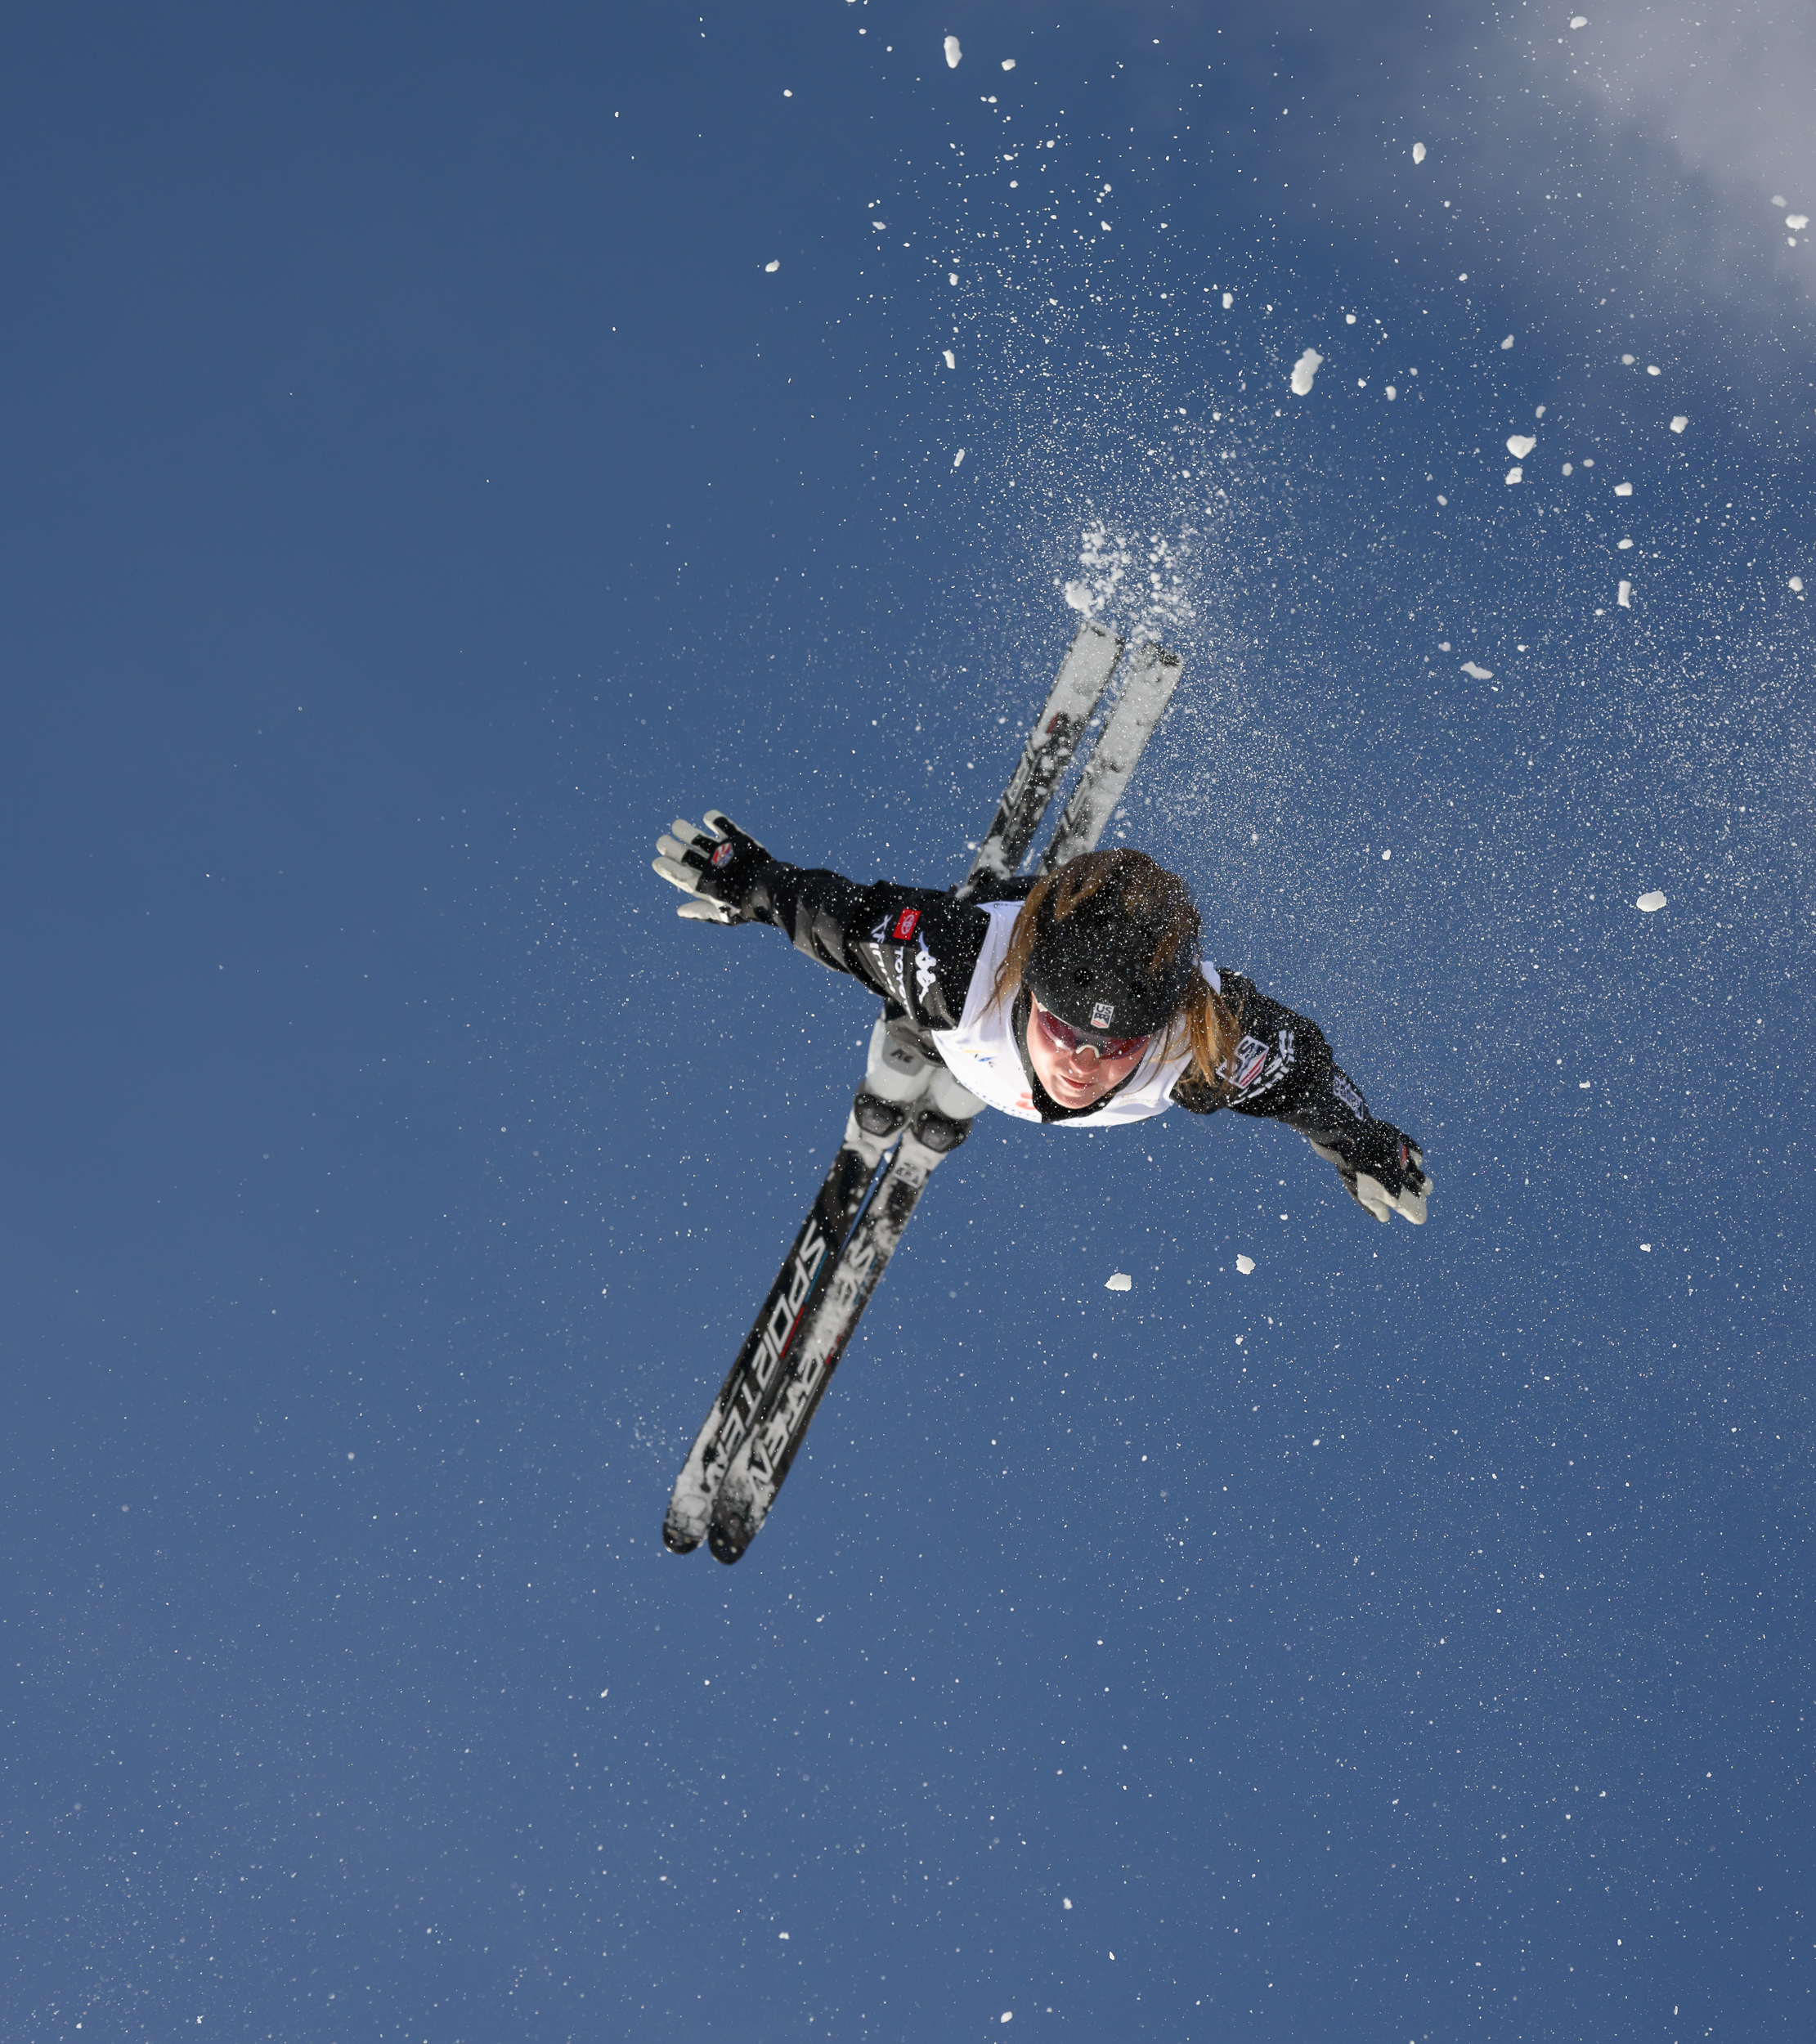 freestyle aerials skier